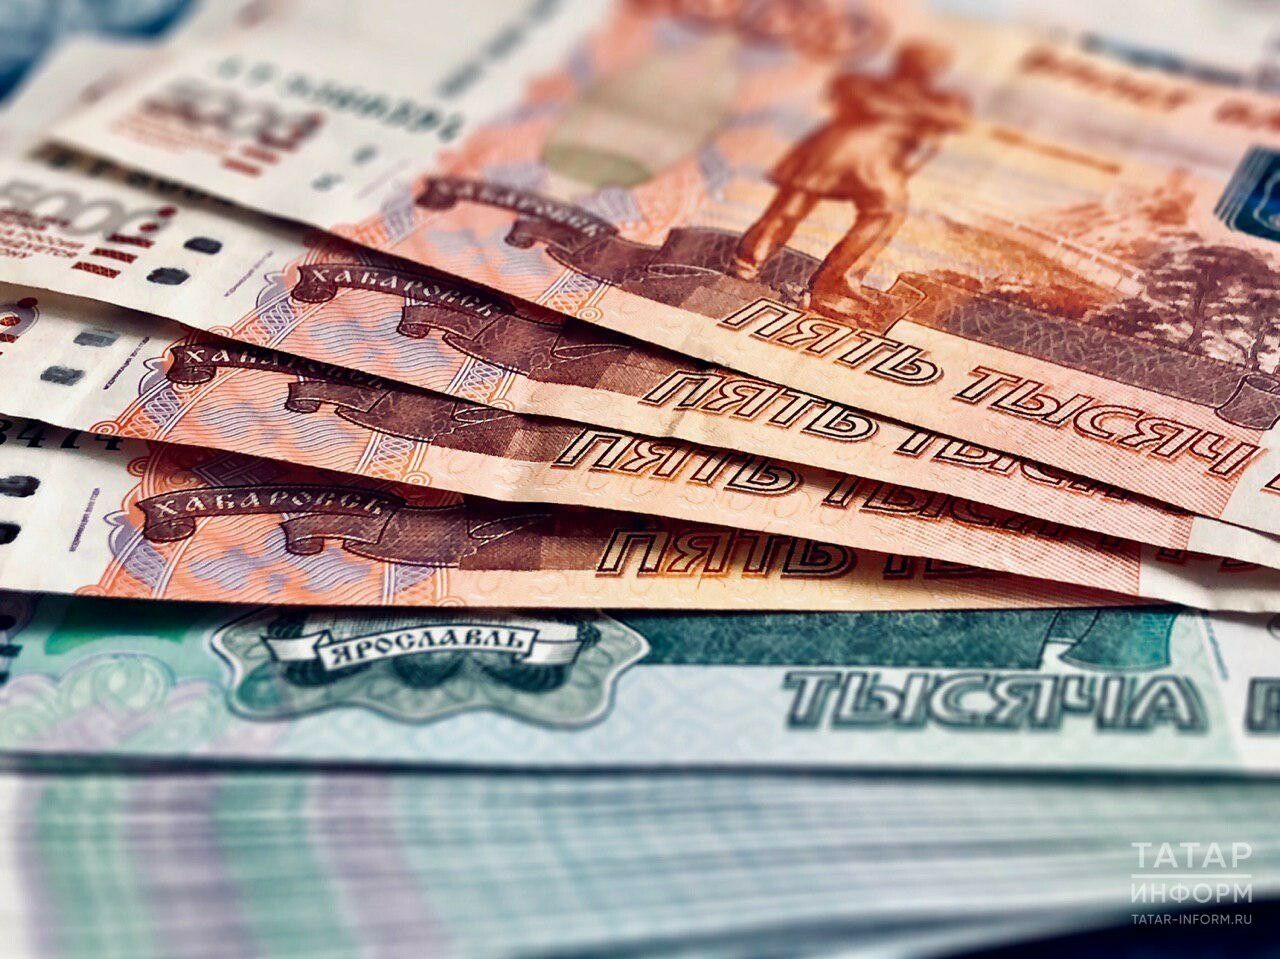 Татарстанстат: Реальные зарплаты выросли на 13,3%